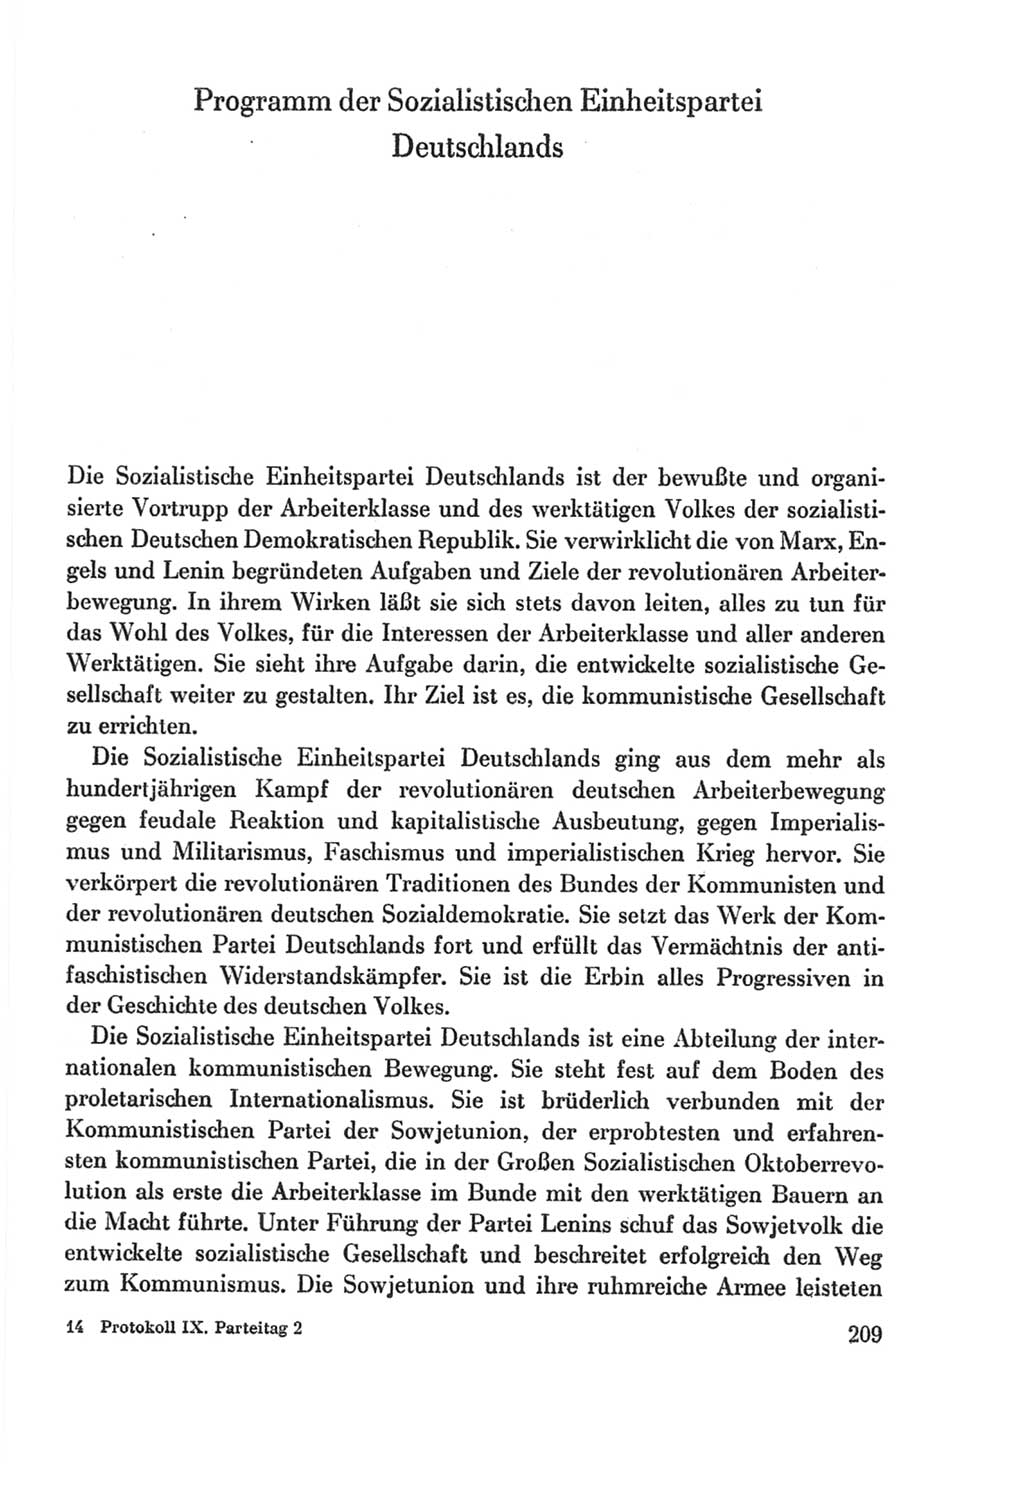 Protokoll der Verhandlungen des Ⅸ. Parteitages der Sozialistischen Einheitspartei Deutschlands (SED) [Deutsche Demokratische Republik (DDR)] 1976, Band 2, Seite 209 (Prot. Verh. Ⅸ. PT SED DDR 1976, Bd. 2, S. 209)